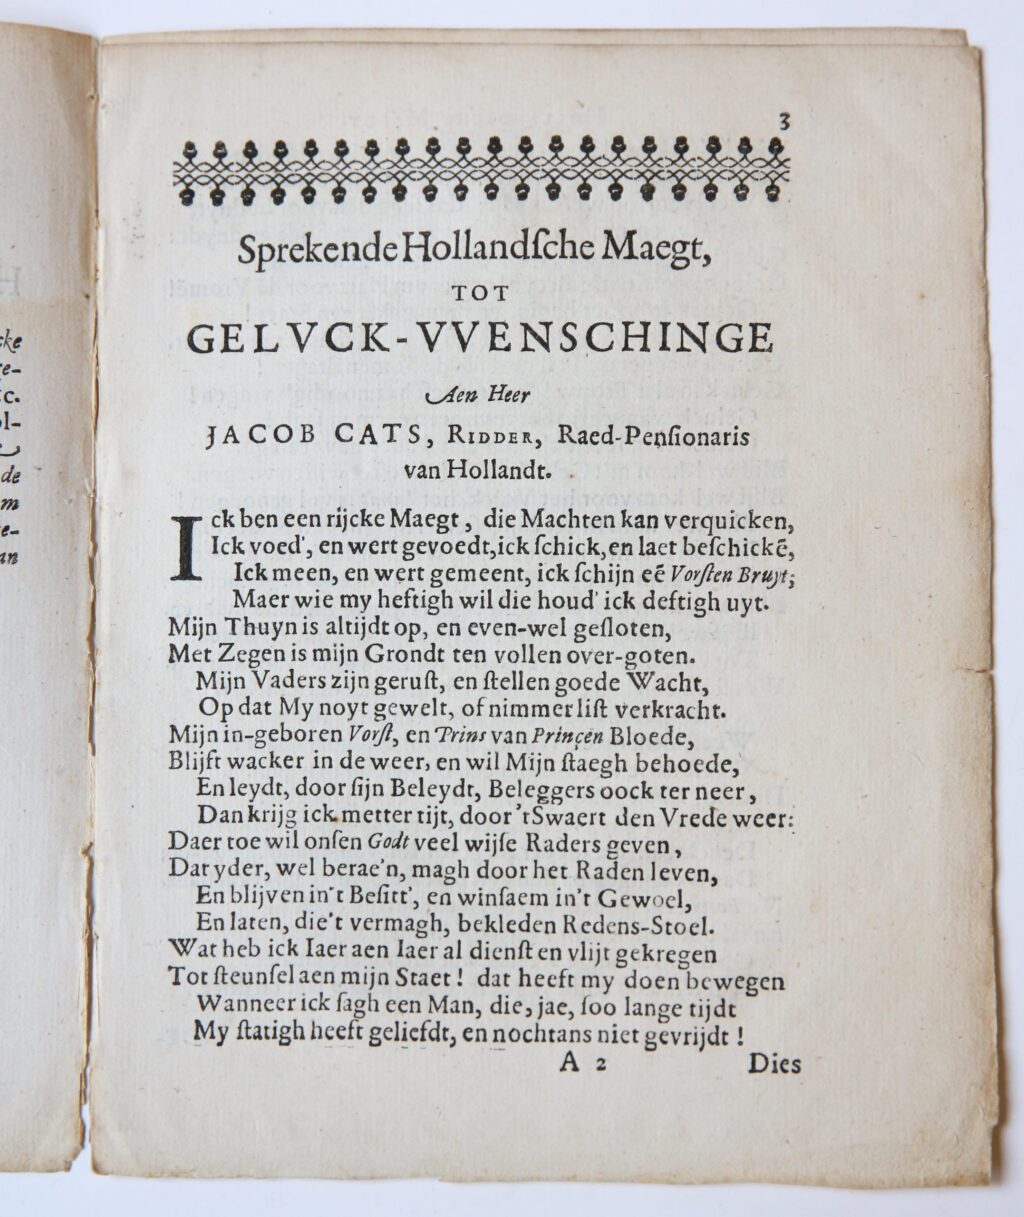 A. vande Vennes geluck-wenschinge door de Hollandsche maegt, aen heer Jacob Cats, Ridder, raed-pensionaris van Hollandt. 's-Gravenhage, Pieter vande Venne, 1636. 4º: 7 p.